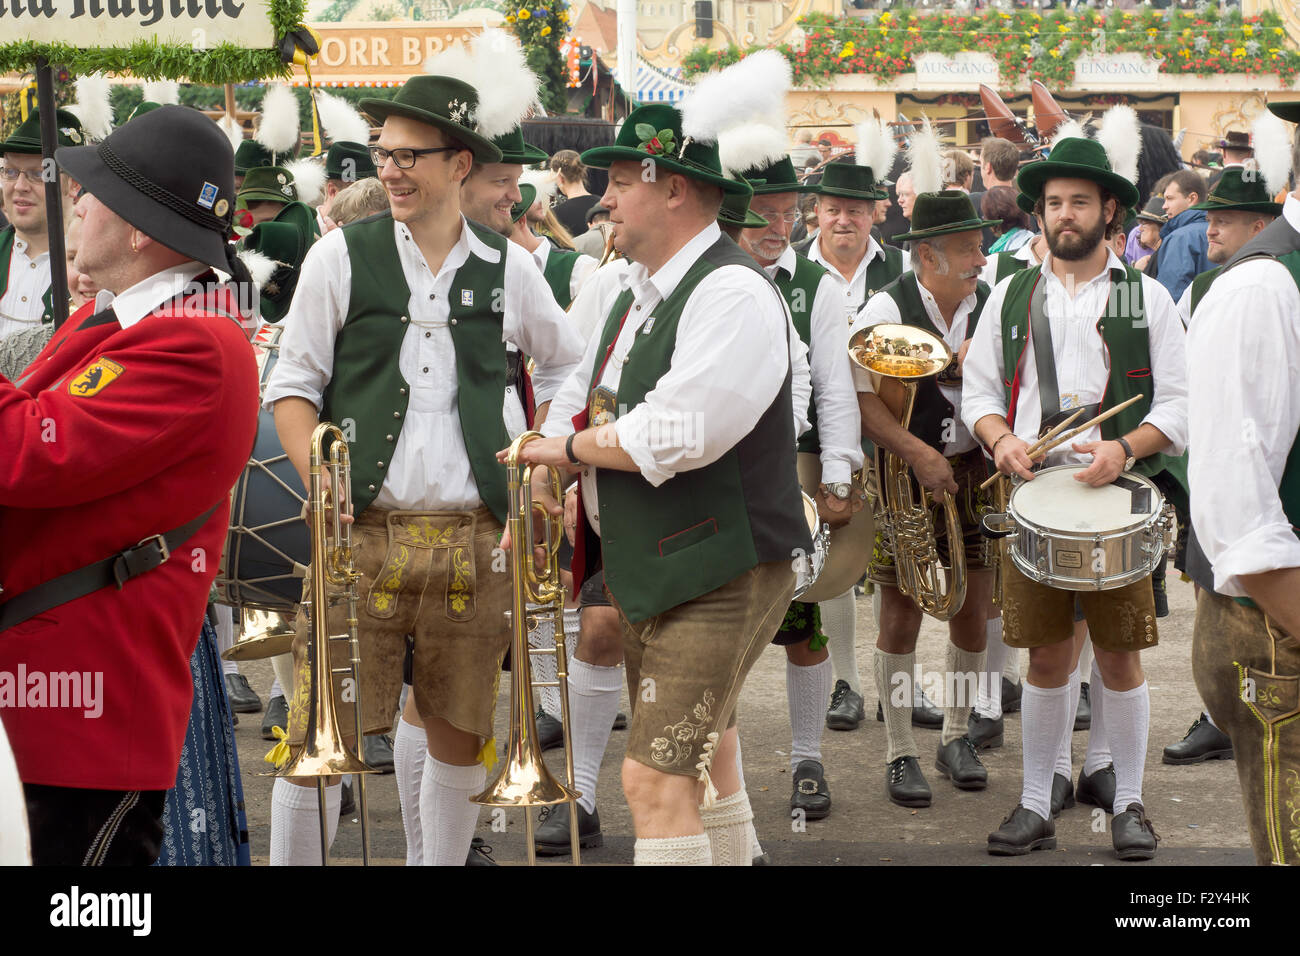 MÜNCHEN, DEUTSCHLAND – SEPT. 20, 2015: traditionelle Marching Bands mit lokalen Kostümen unterhalten Scharen von Besuchern auf dem jährlichen Oktoberfest. Das Festival findet vom 19. September bis 4. Oktober 2015 in München. Stockfoto